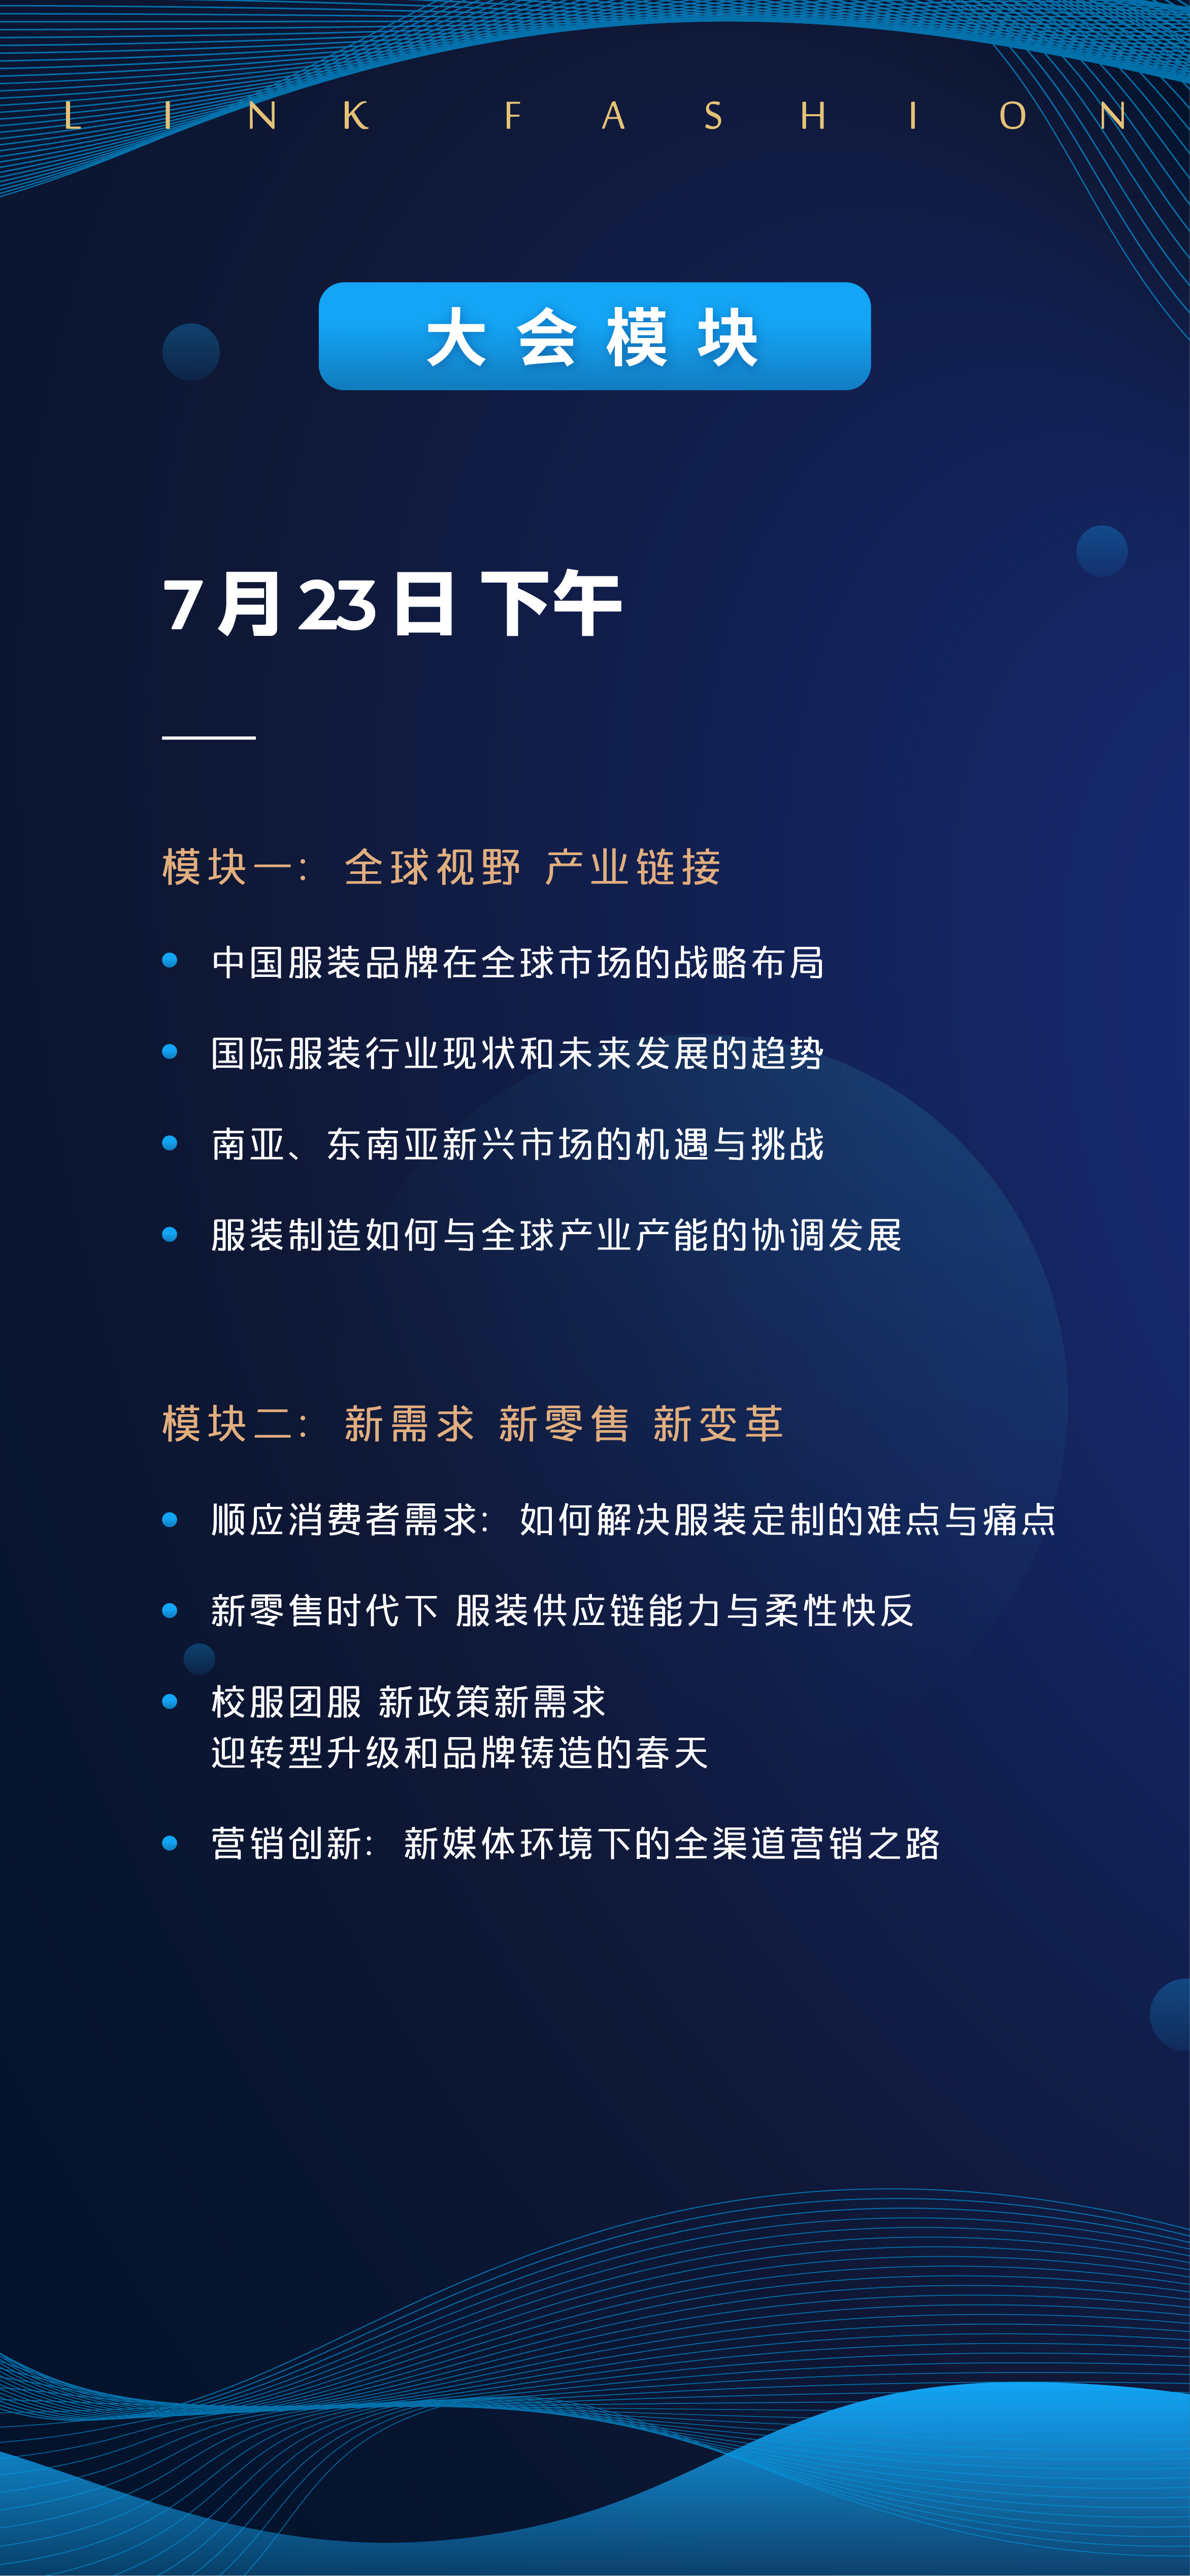 2020 LINK FASHION 全球服装产业领袖峰会（上海）